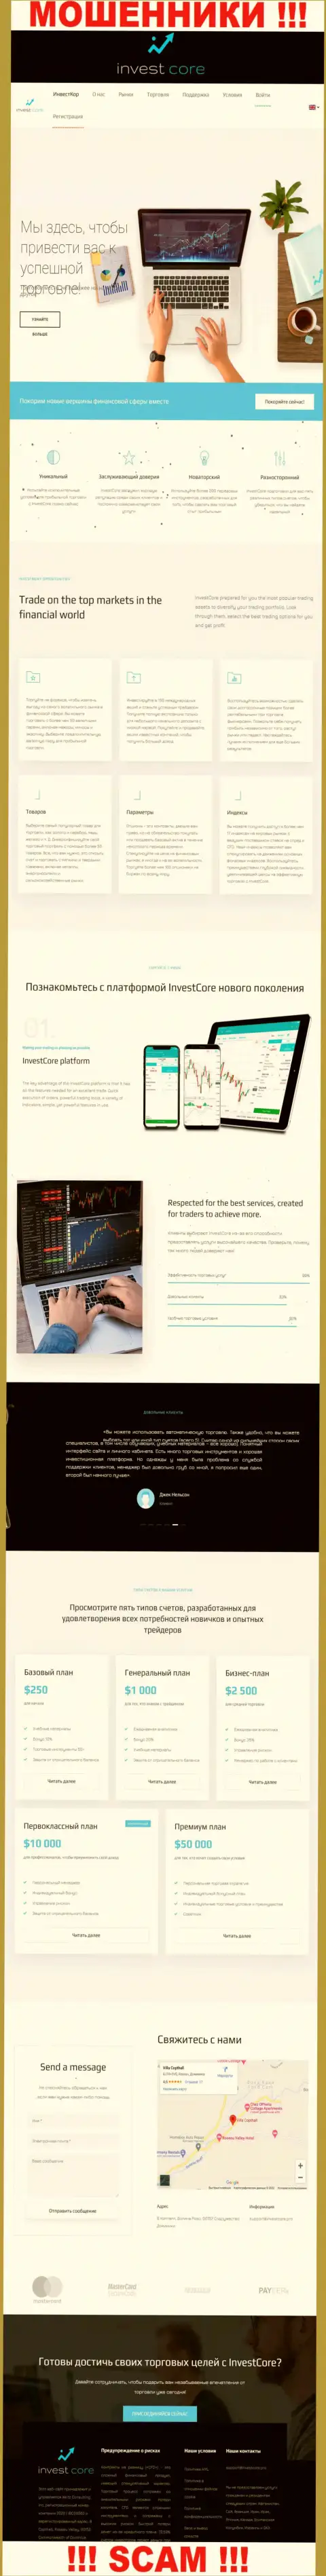 Веб-сайт мошеннической конторы InvestCore - это привлекательная обложка и не больше